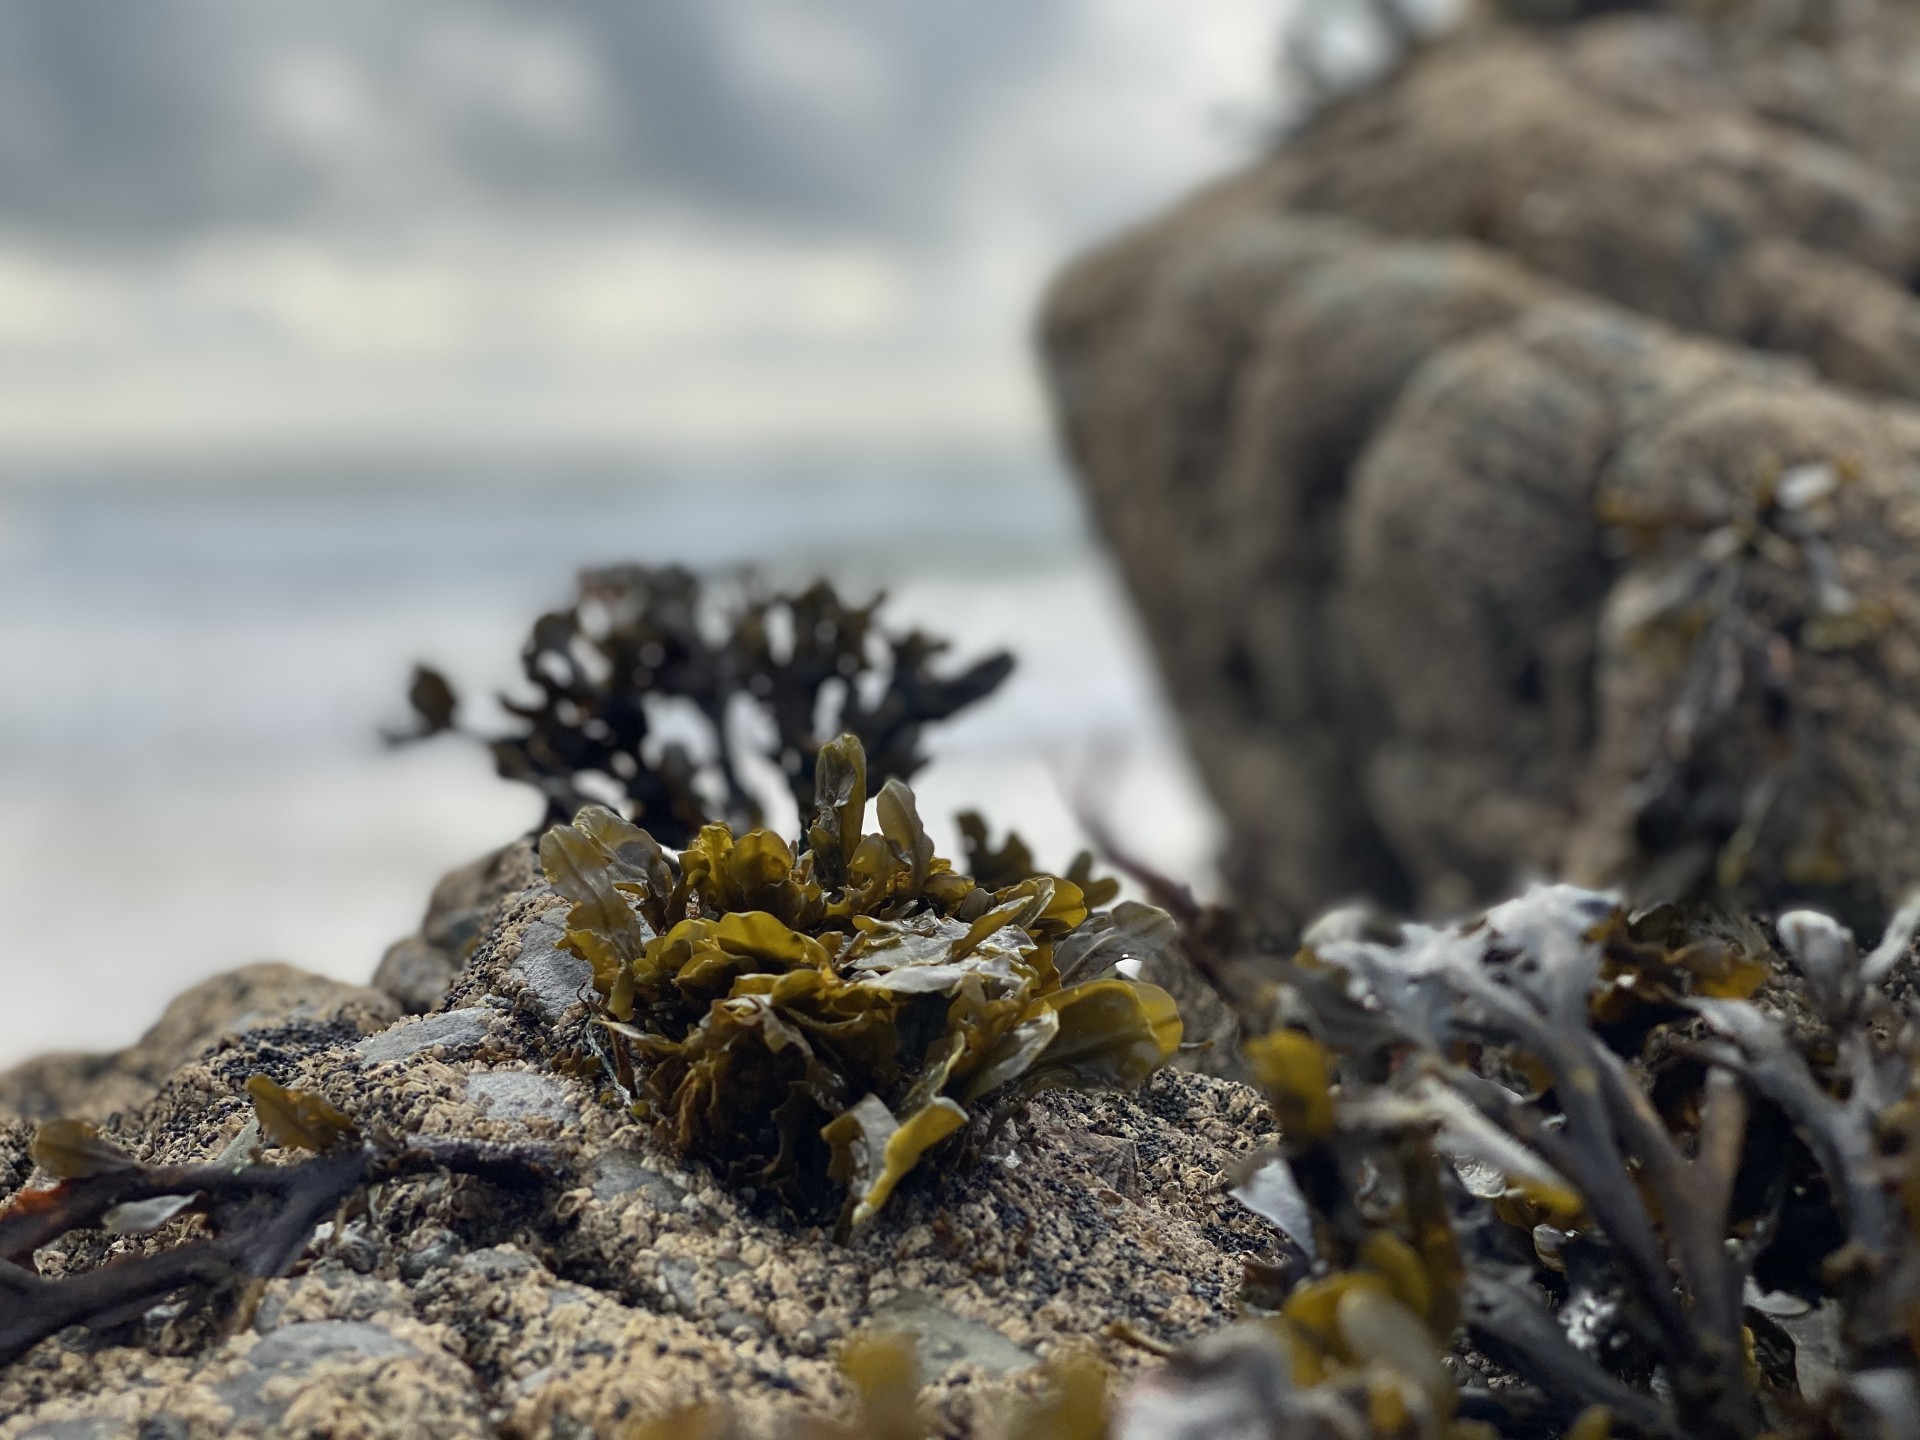 Seaweeds on rocks.